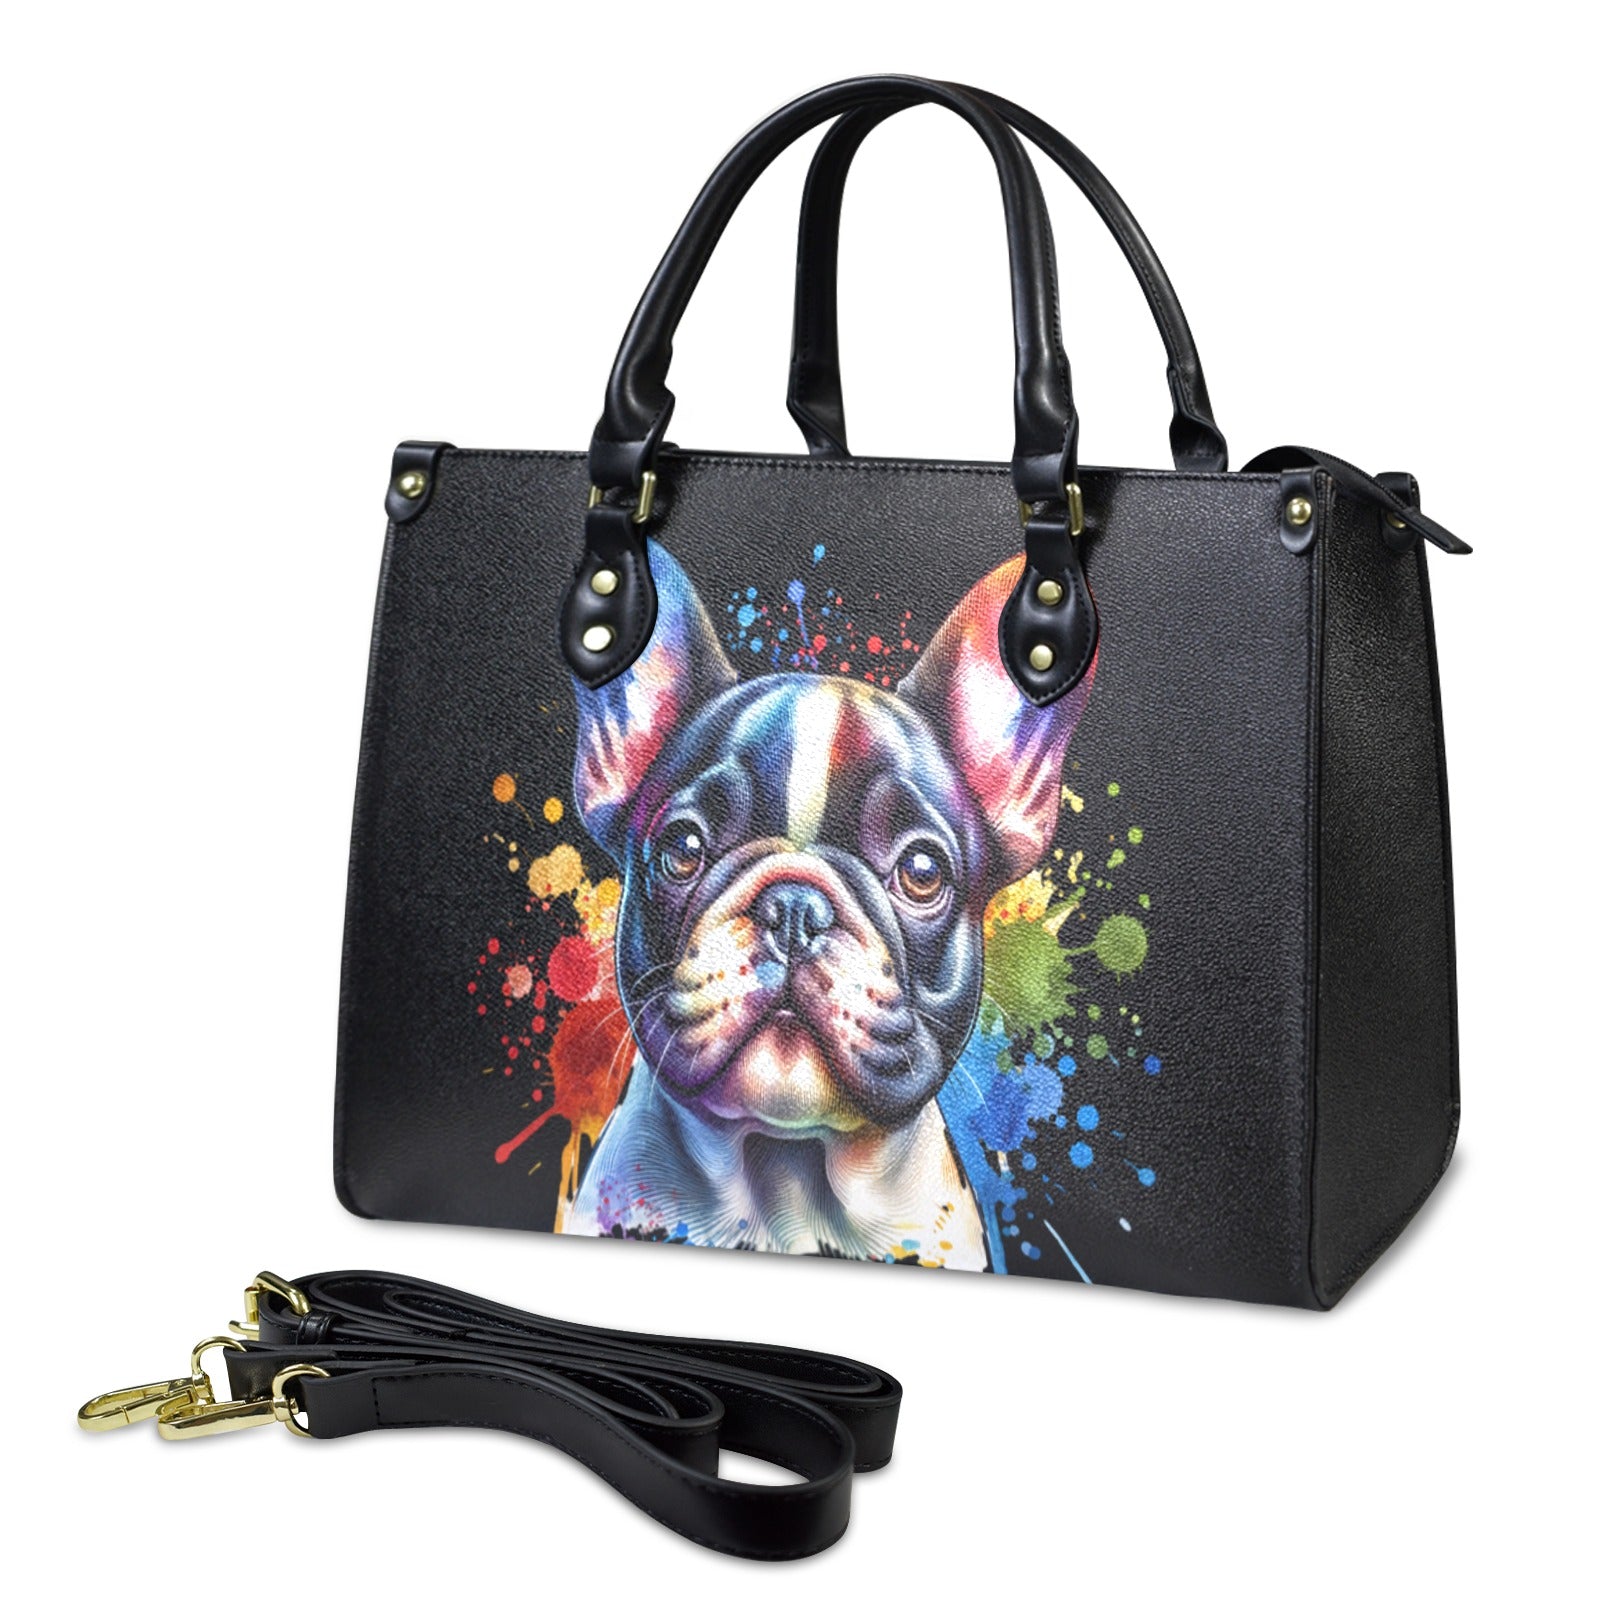 French Bulldog Handbag - Watercolor